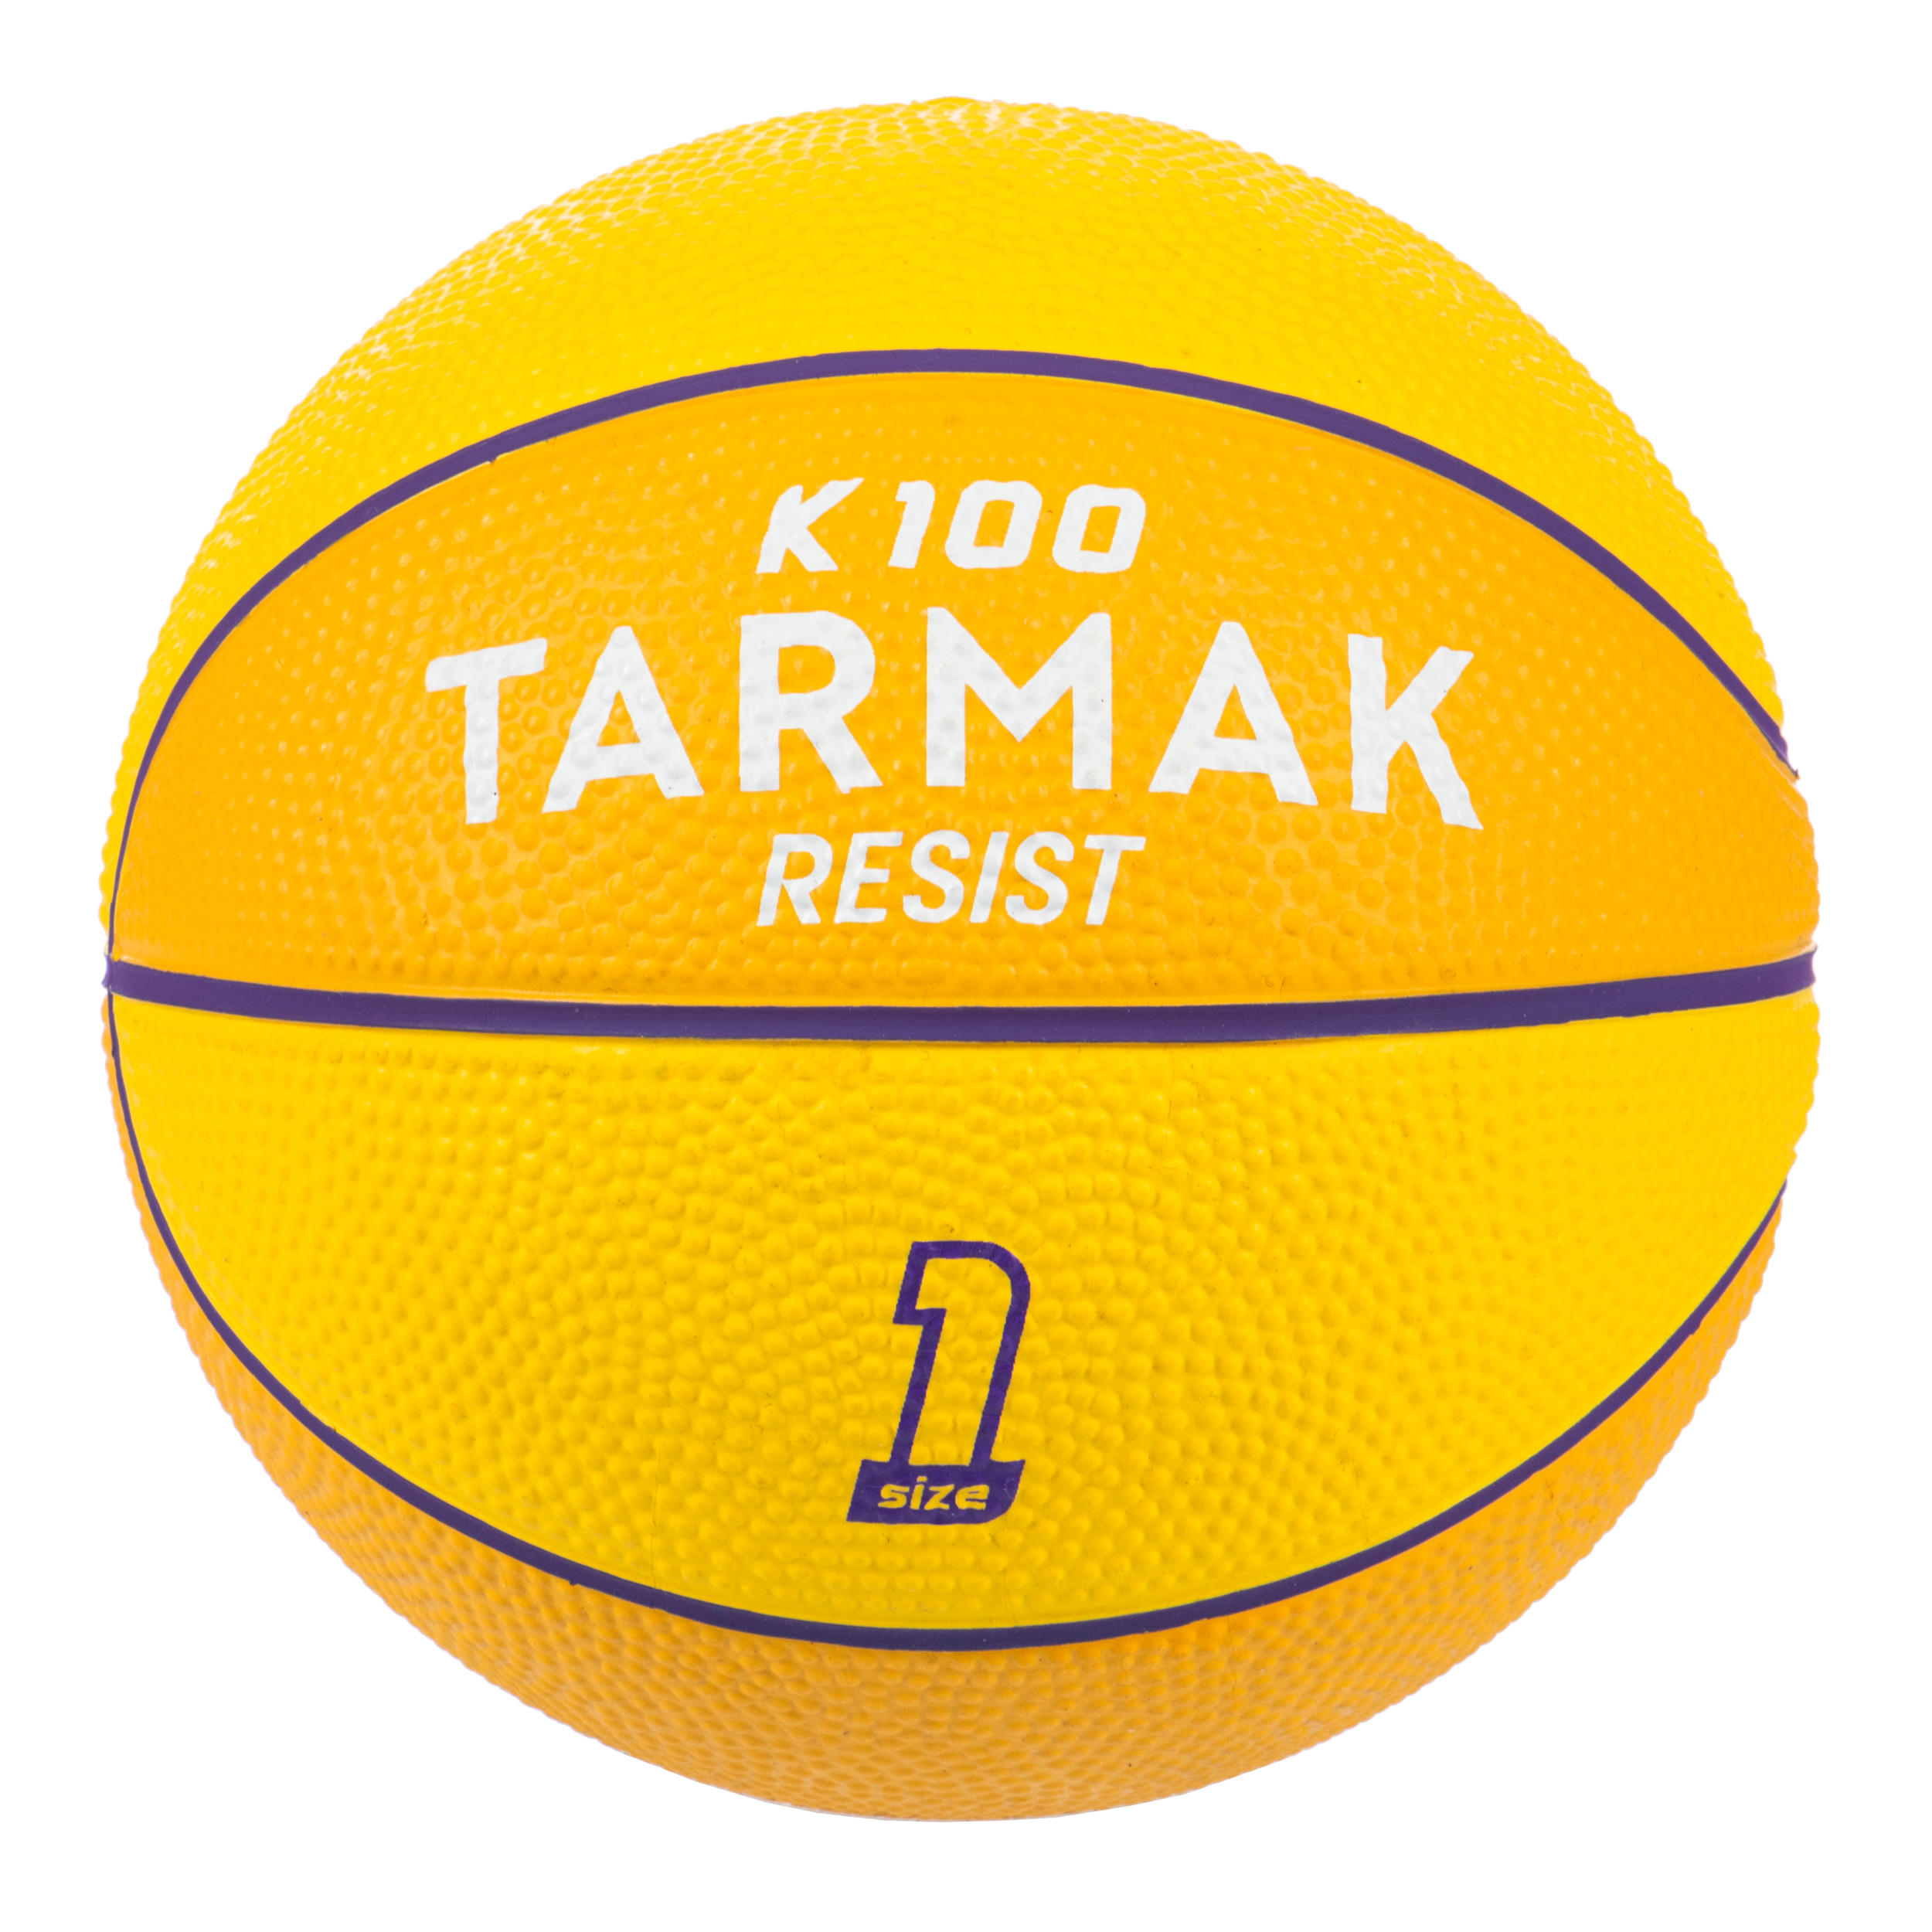 TARMAK Detská mini basketbalová lopta veľkosti 1 - K100 žltá gumená žltá 1